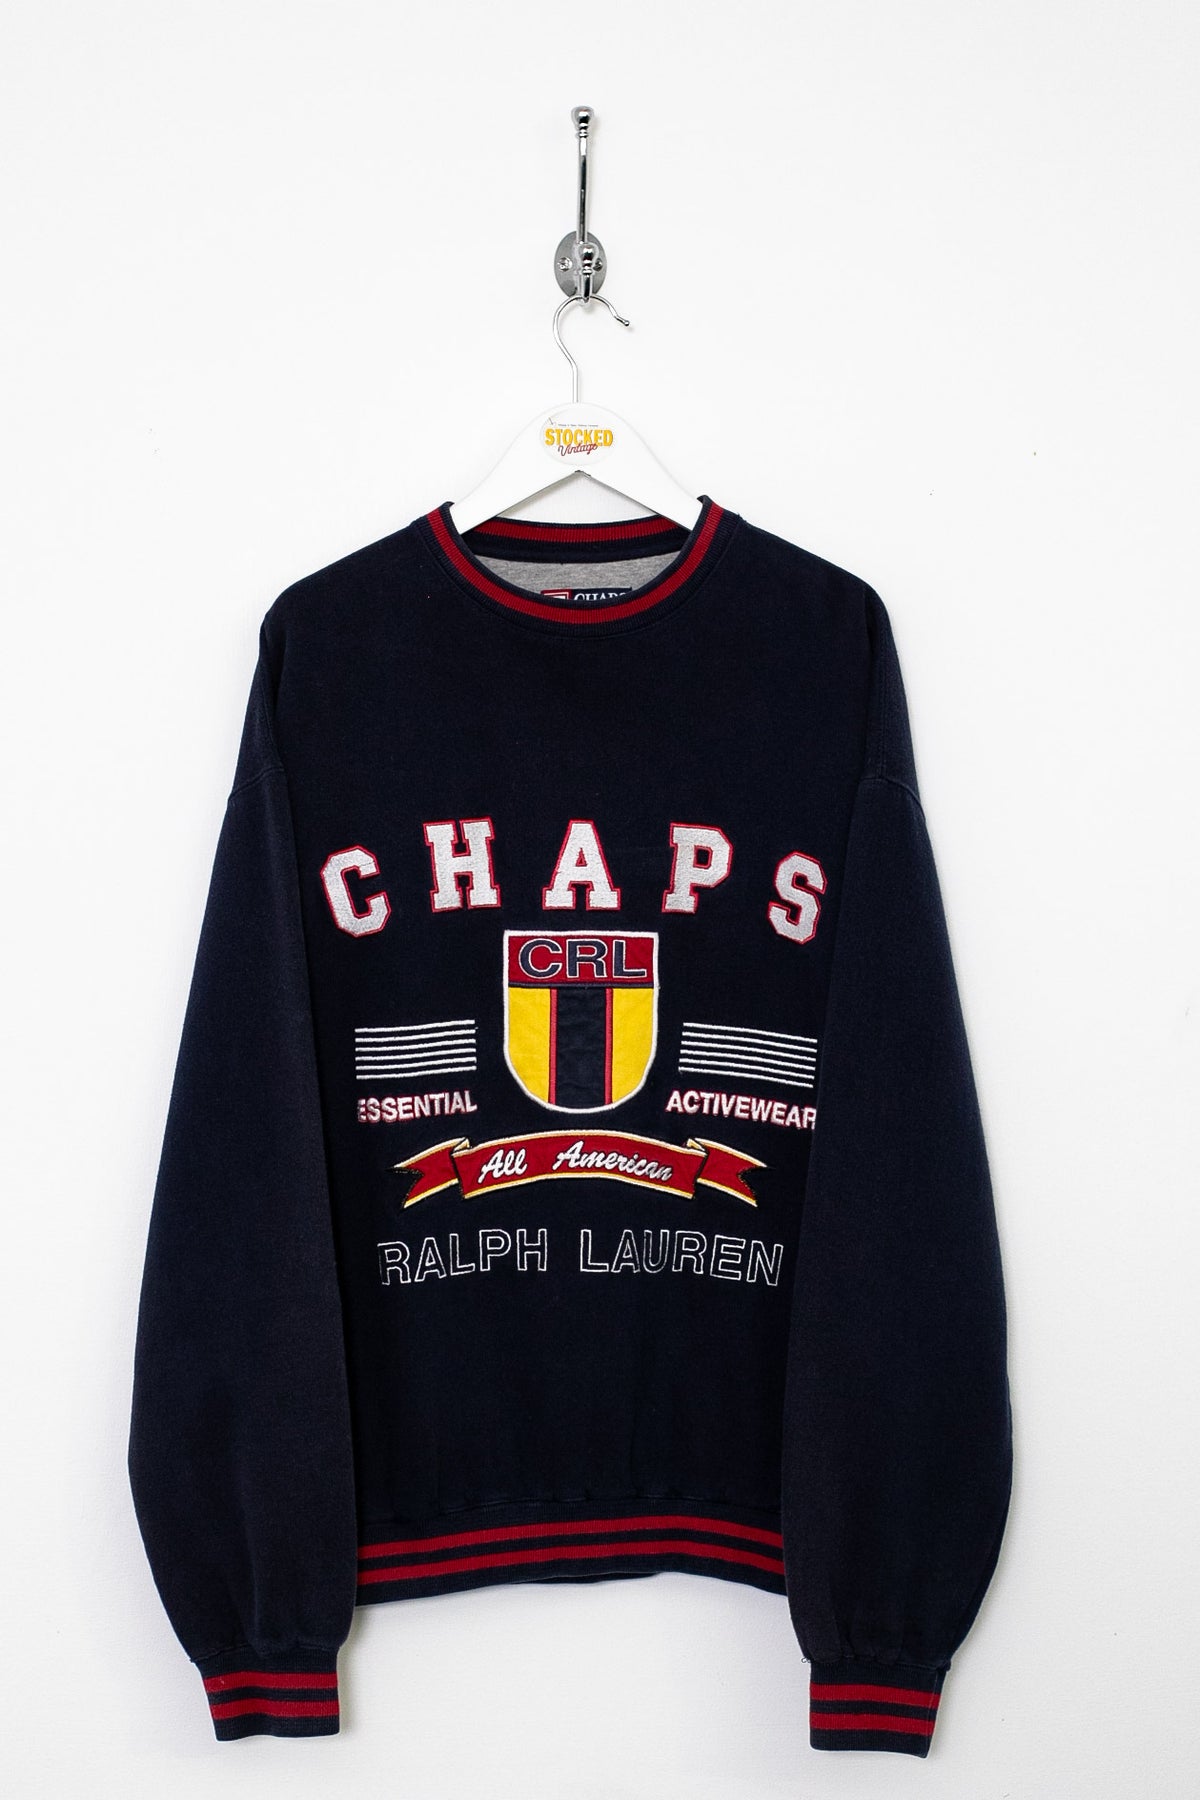 00s Ralph Lauren Chaps Sweatshirt (M)